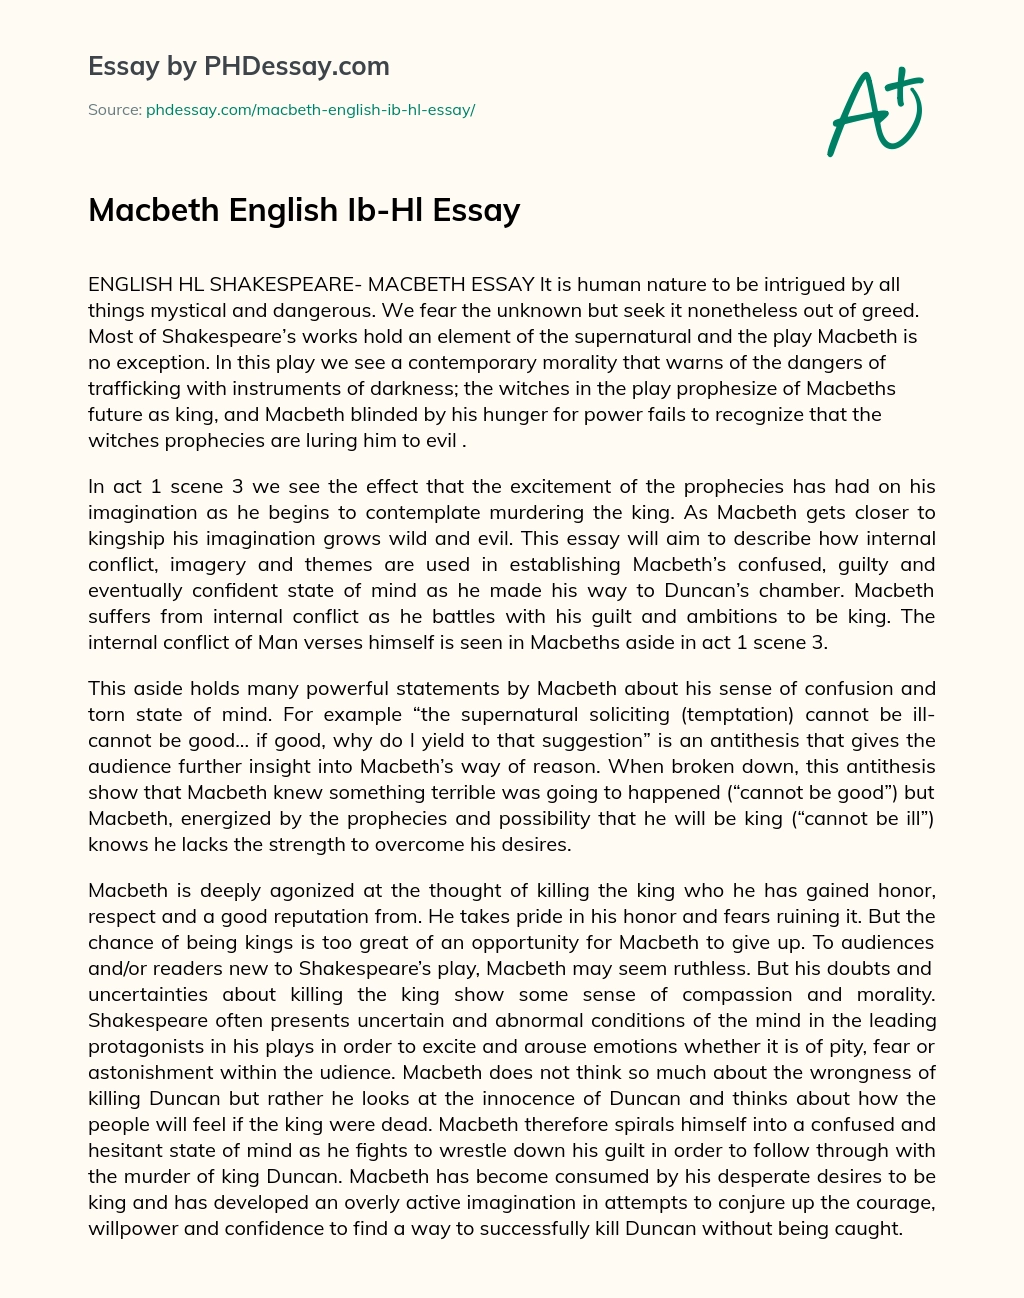 Macbeth English Ib-Hl Essay essay